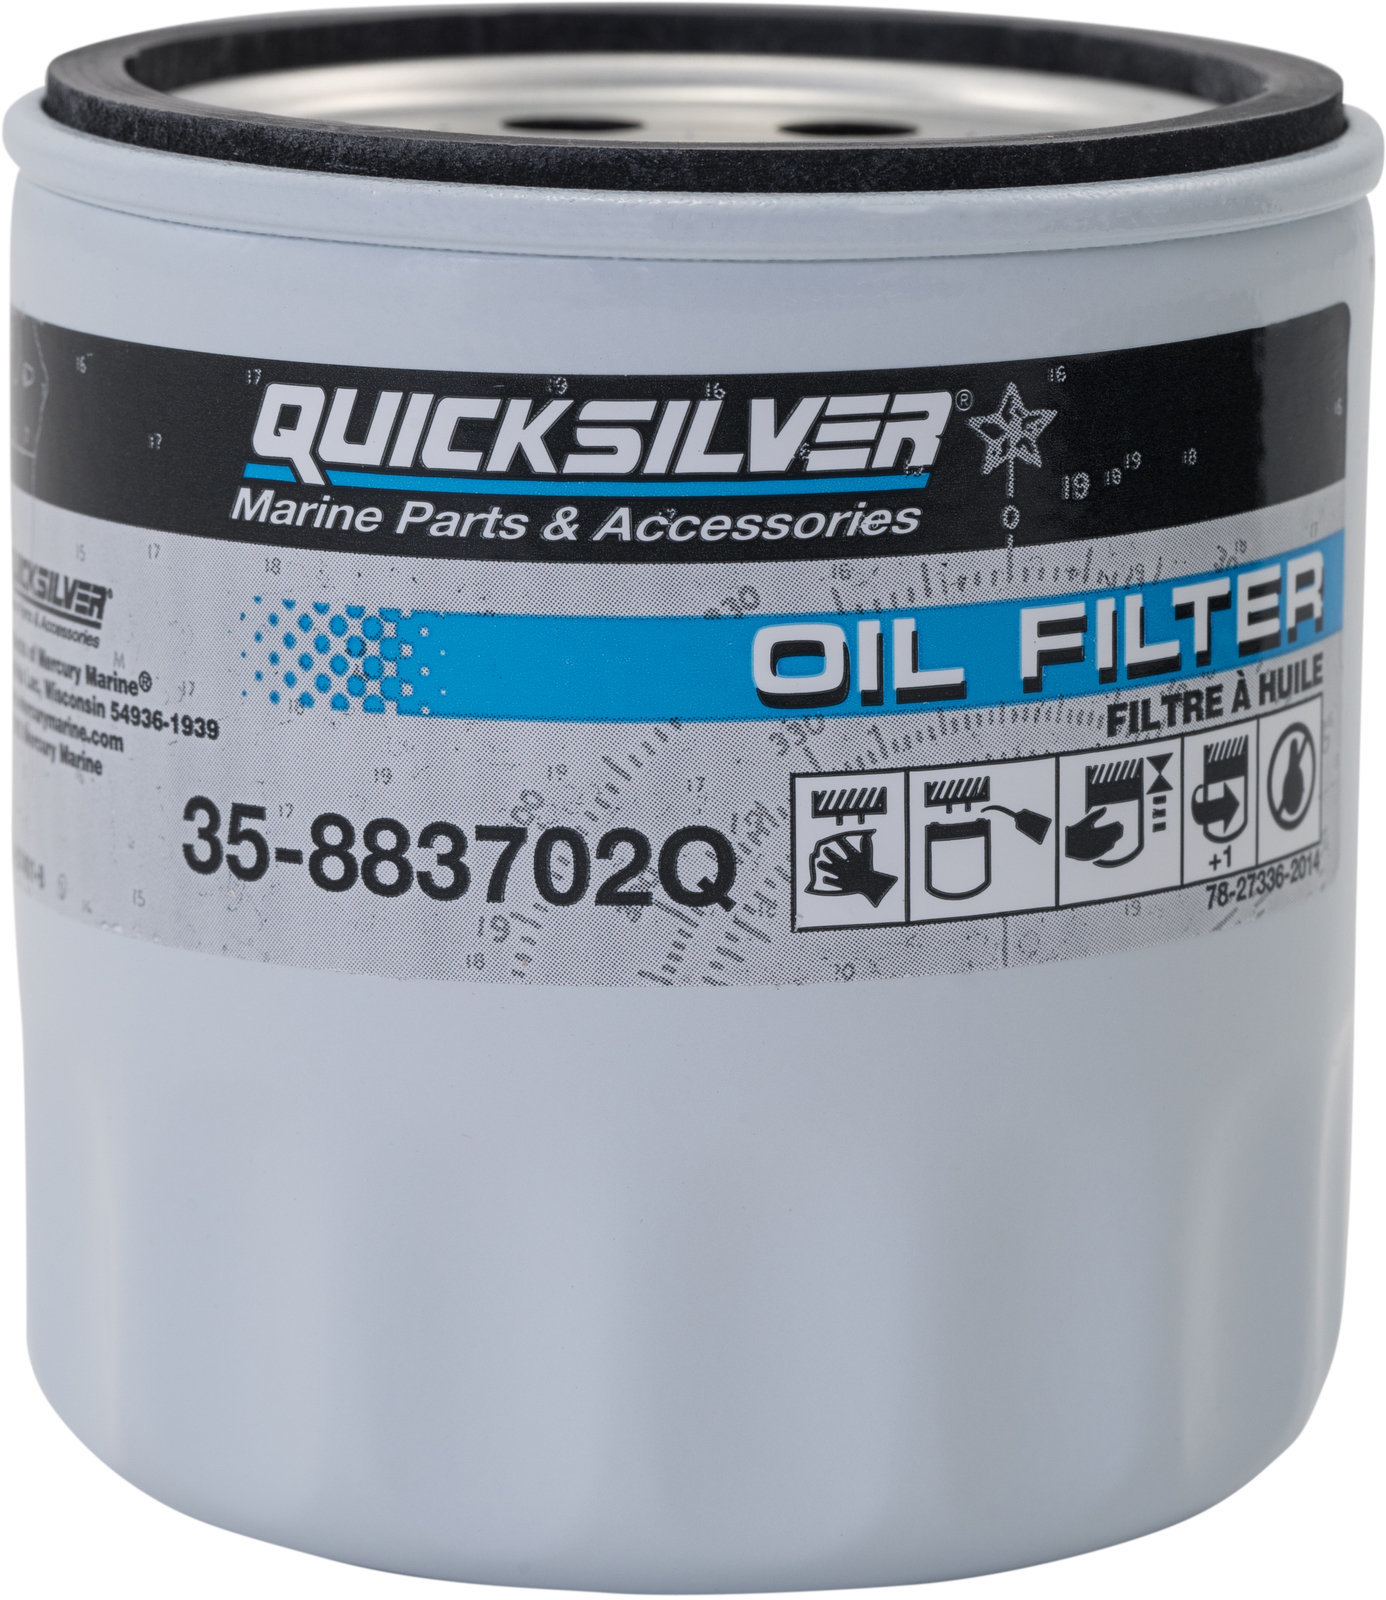 Filteri za brodske motore Quicksilver Oil Filter 35-883702Q